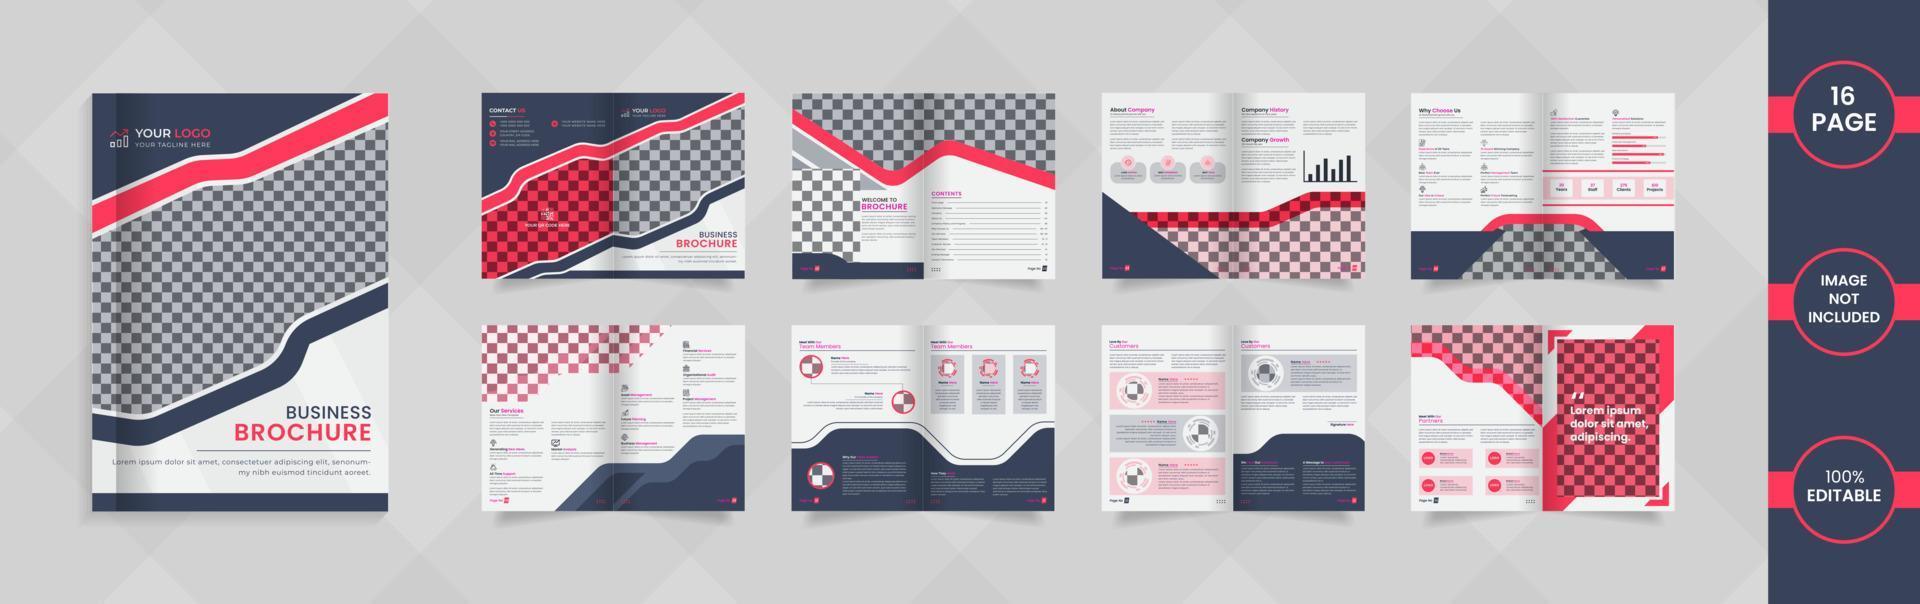 Design de brochura da empresa de 16 páginas com informações e formas abstratas de cor vermelha e cinza. vetor